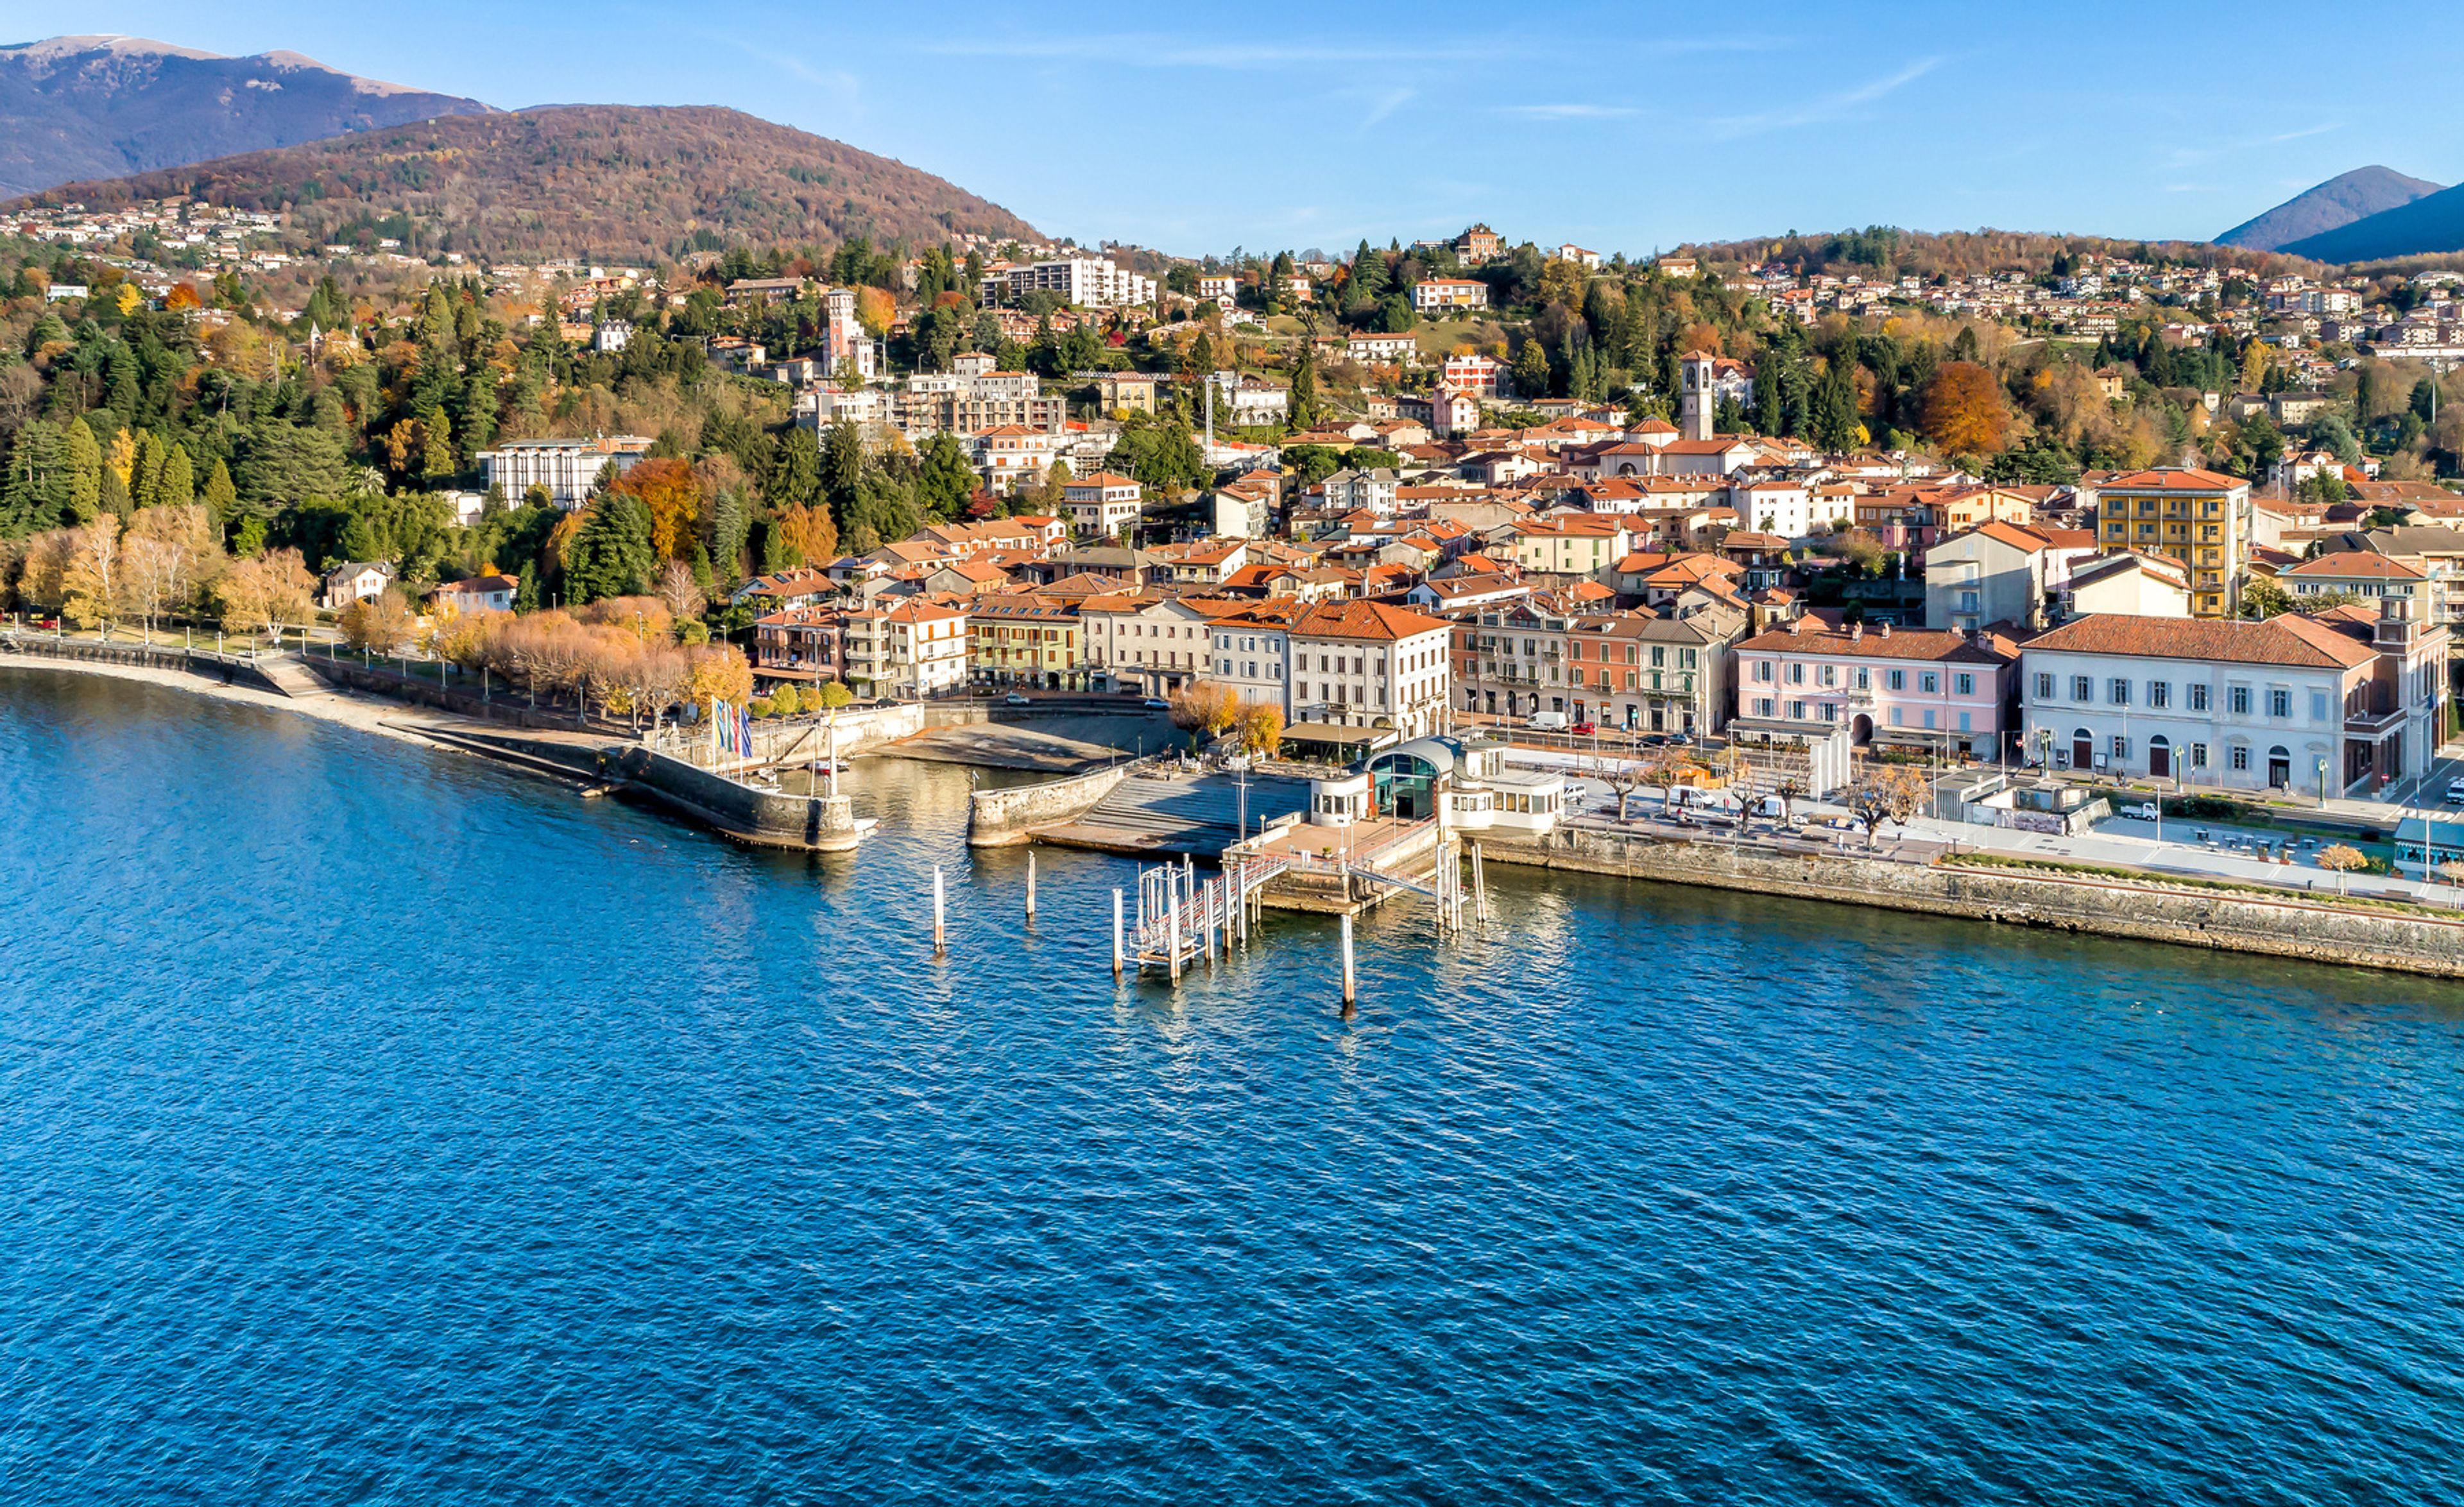 Veduta aerea di Luino, piccola città sulle sponde del Lago Maggiore in provincia di Varese, Italia.